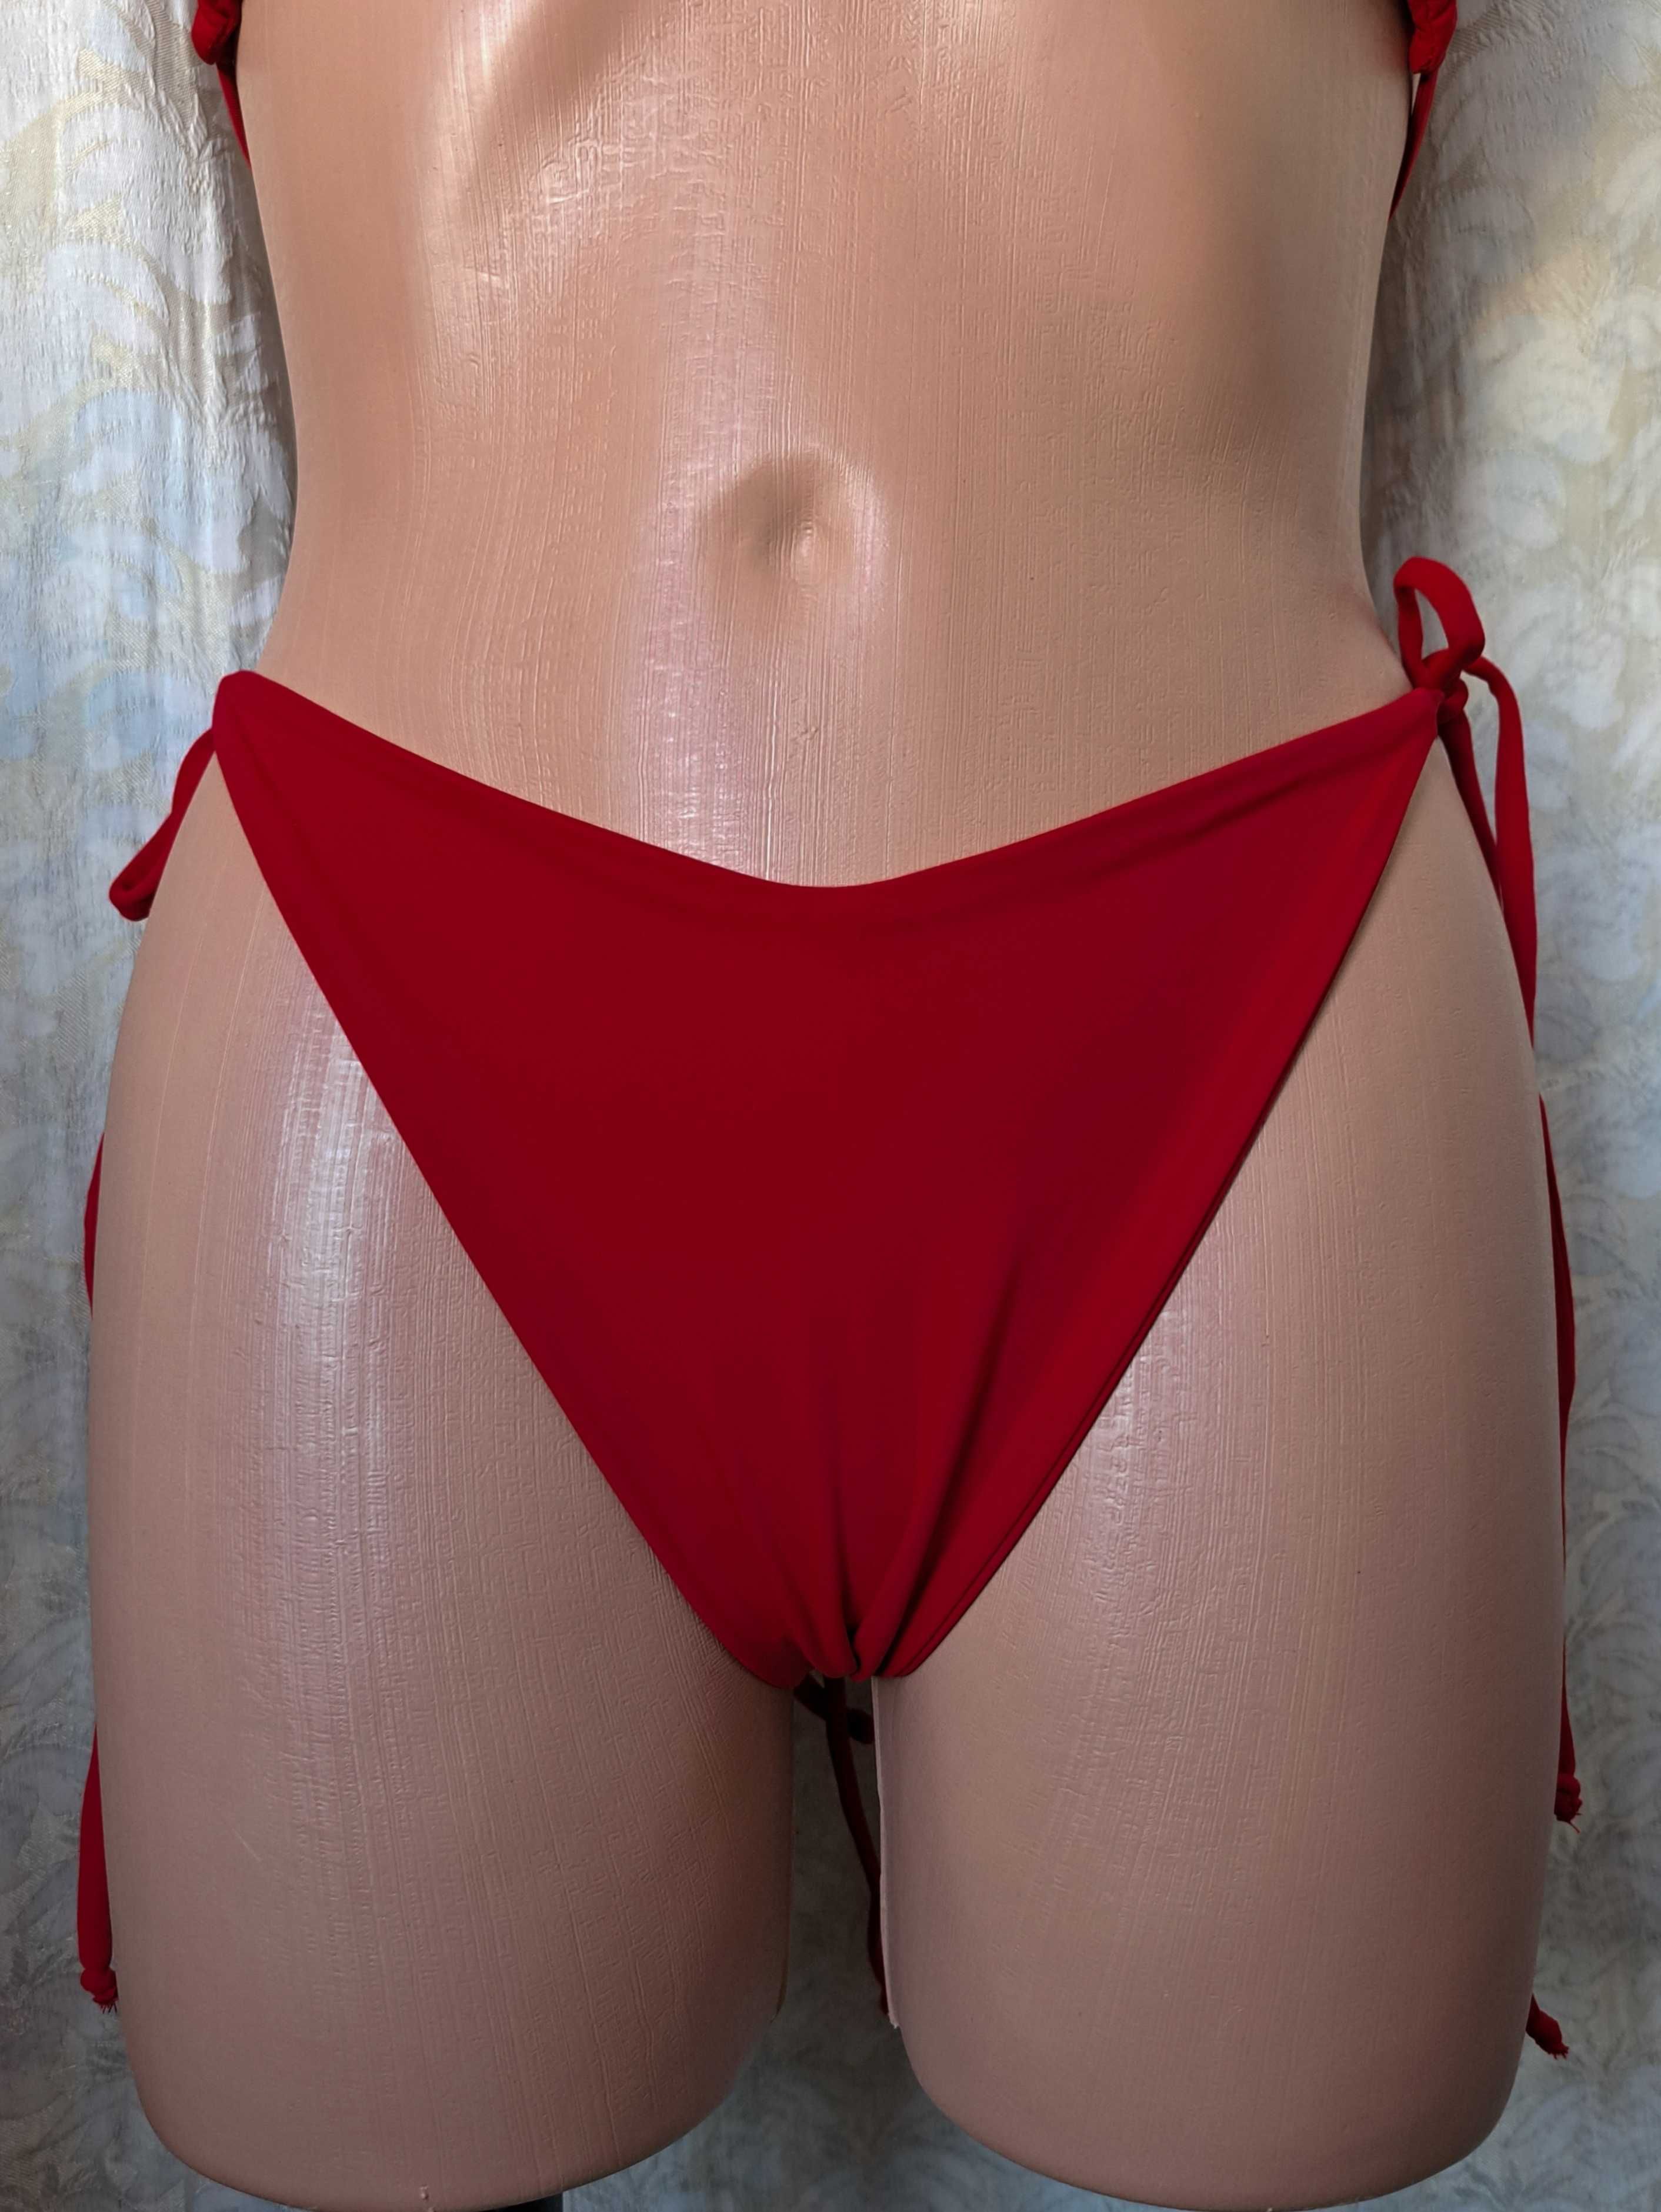 Новый стильный красный купальник на завязках универсального размера!